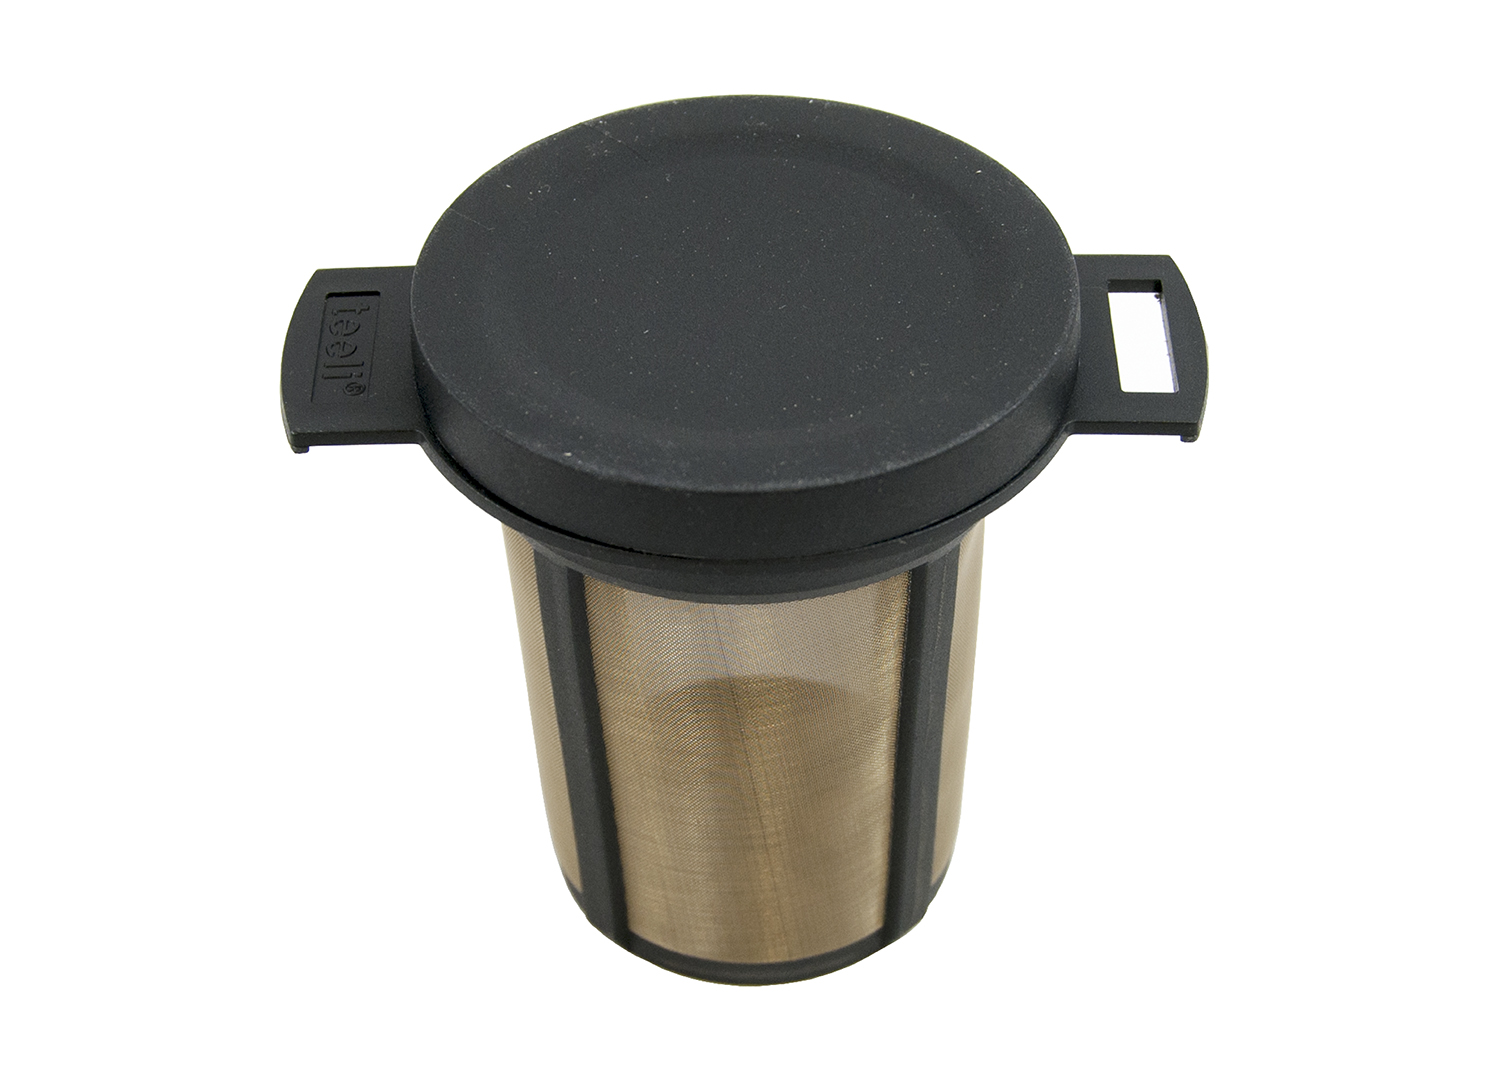 Vaso filtro para té de acero inoxidable filtro para infusor